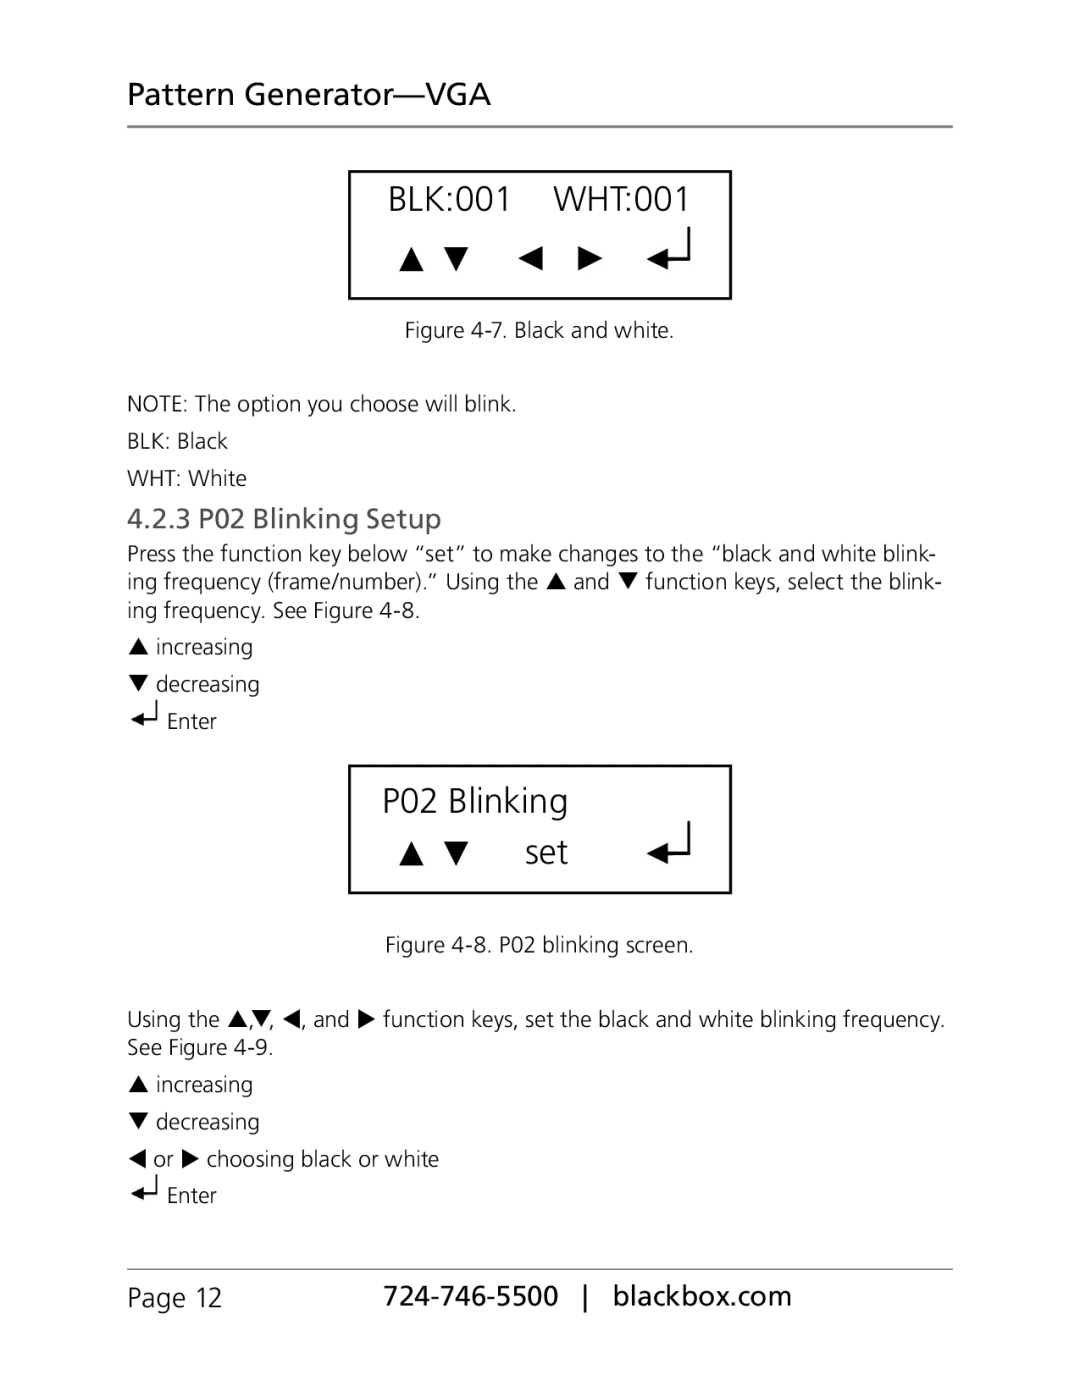 Black Box PG-VGA manual BLK001 WHT001, 4.2.3 P02 Blinking Setup, P02 Blinking set, Pattern Generator-VGA, Page 